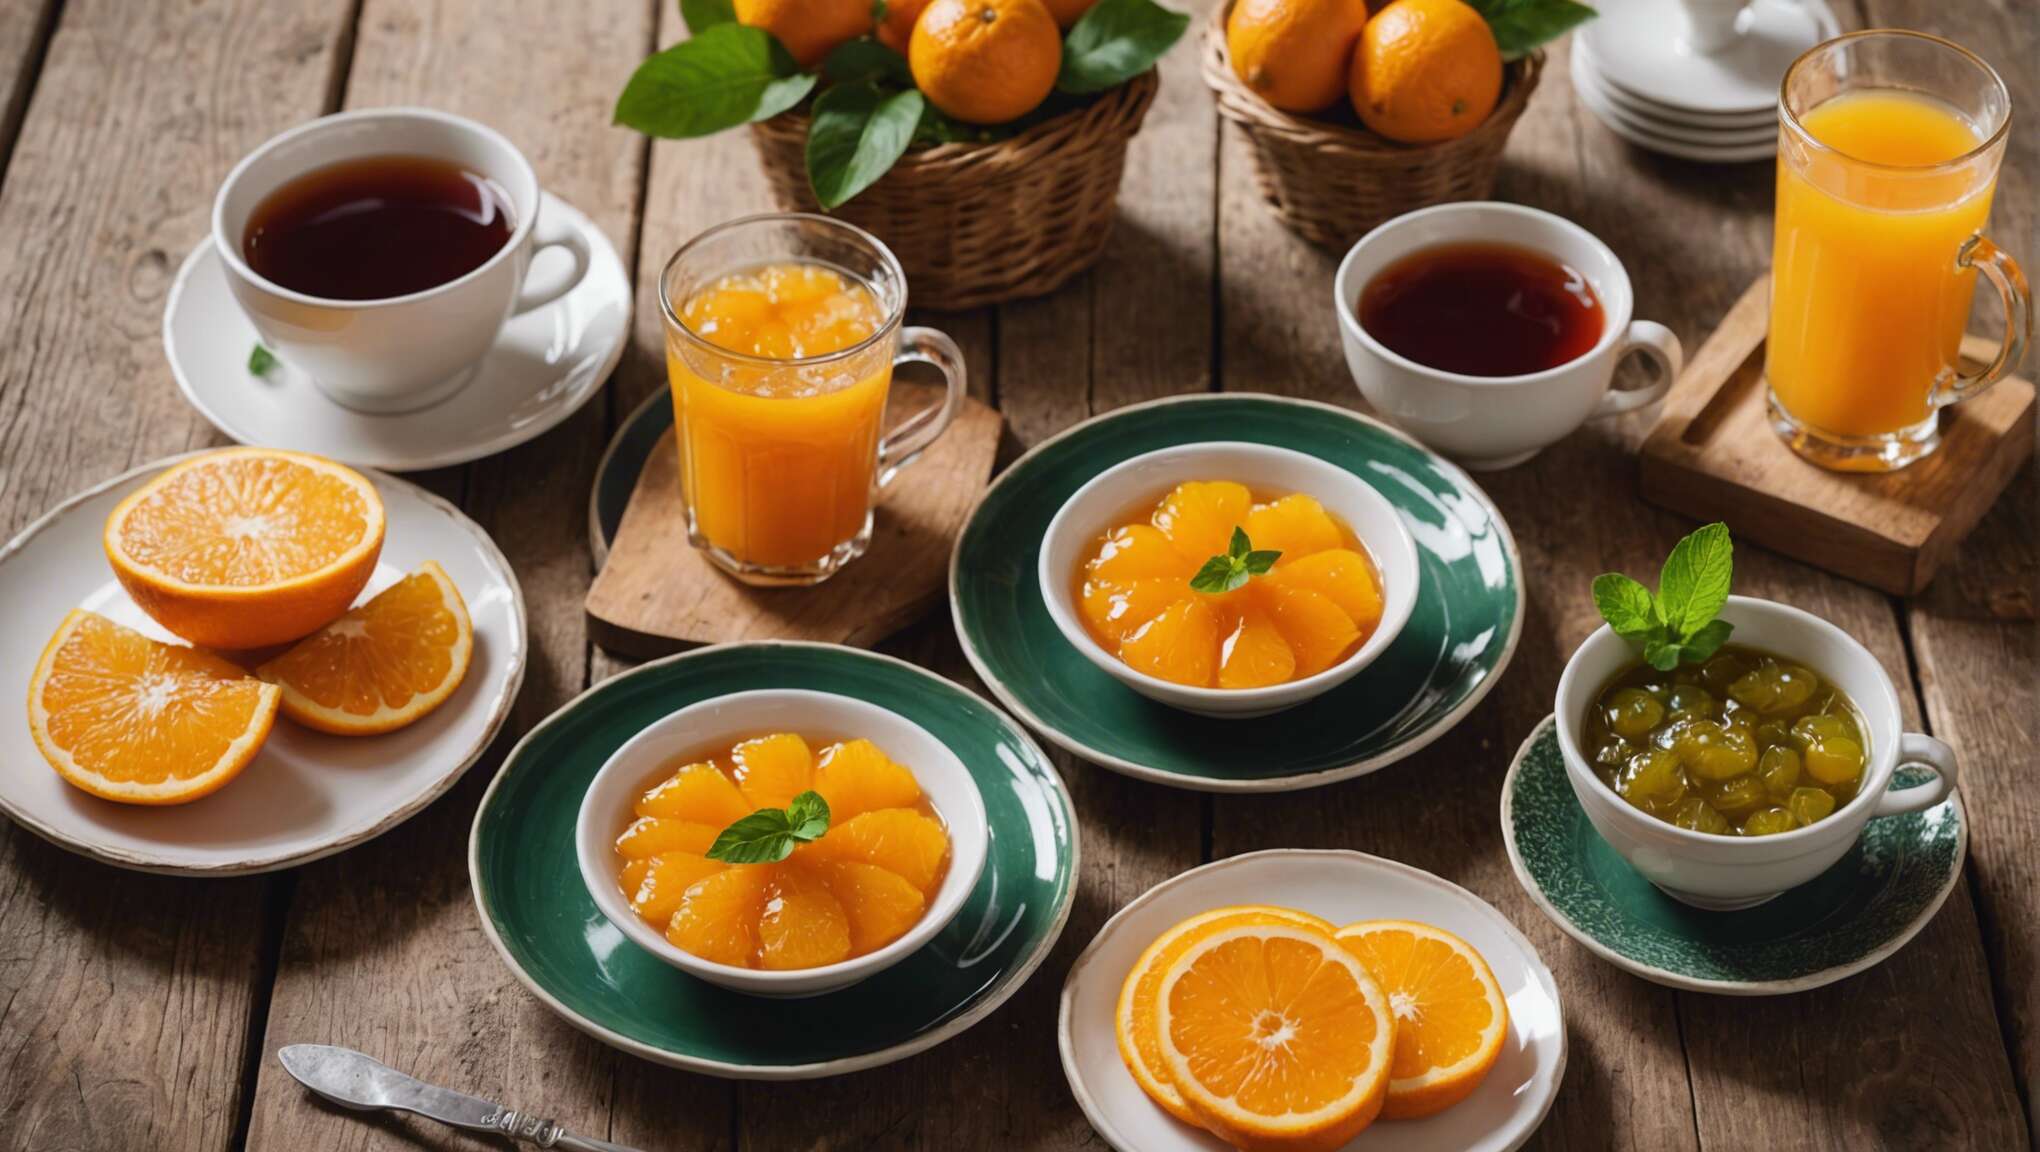 Petit déjeuner royal : intégrer la confiture d’orange dans un menu sain et équilibré